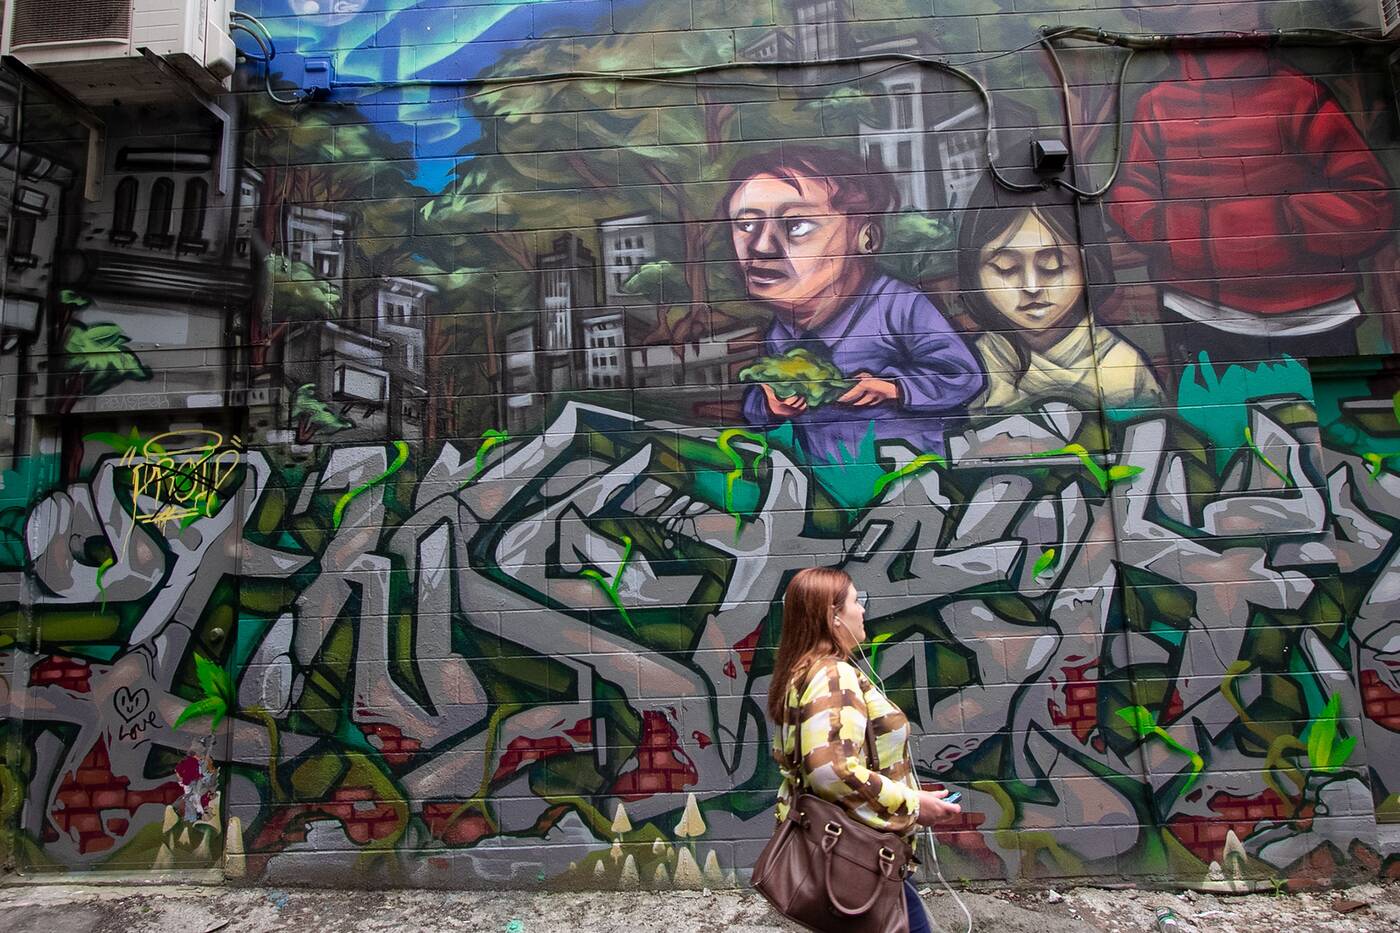 graffiti alley toronto